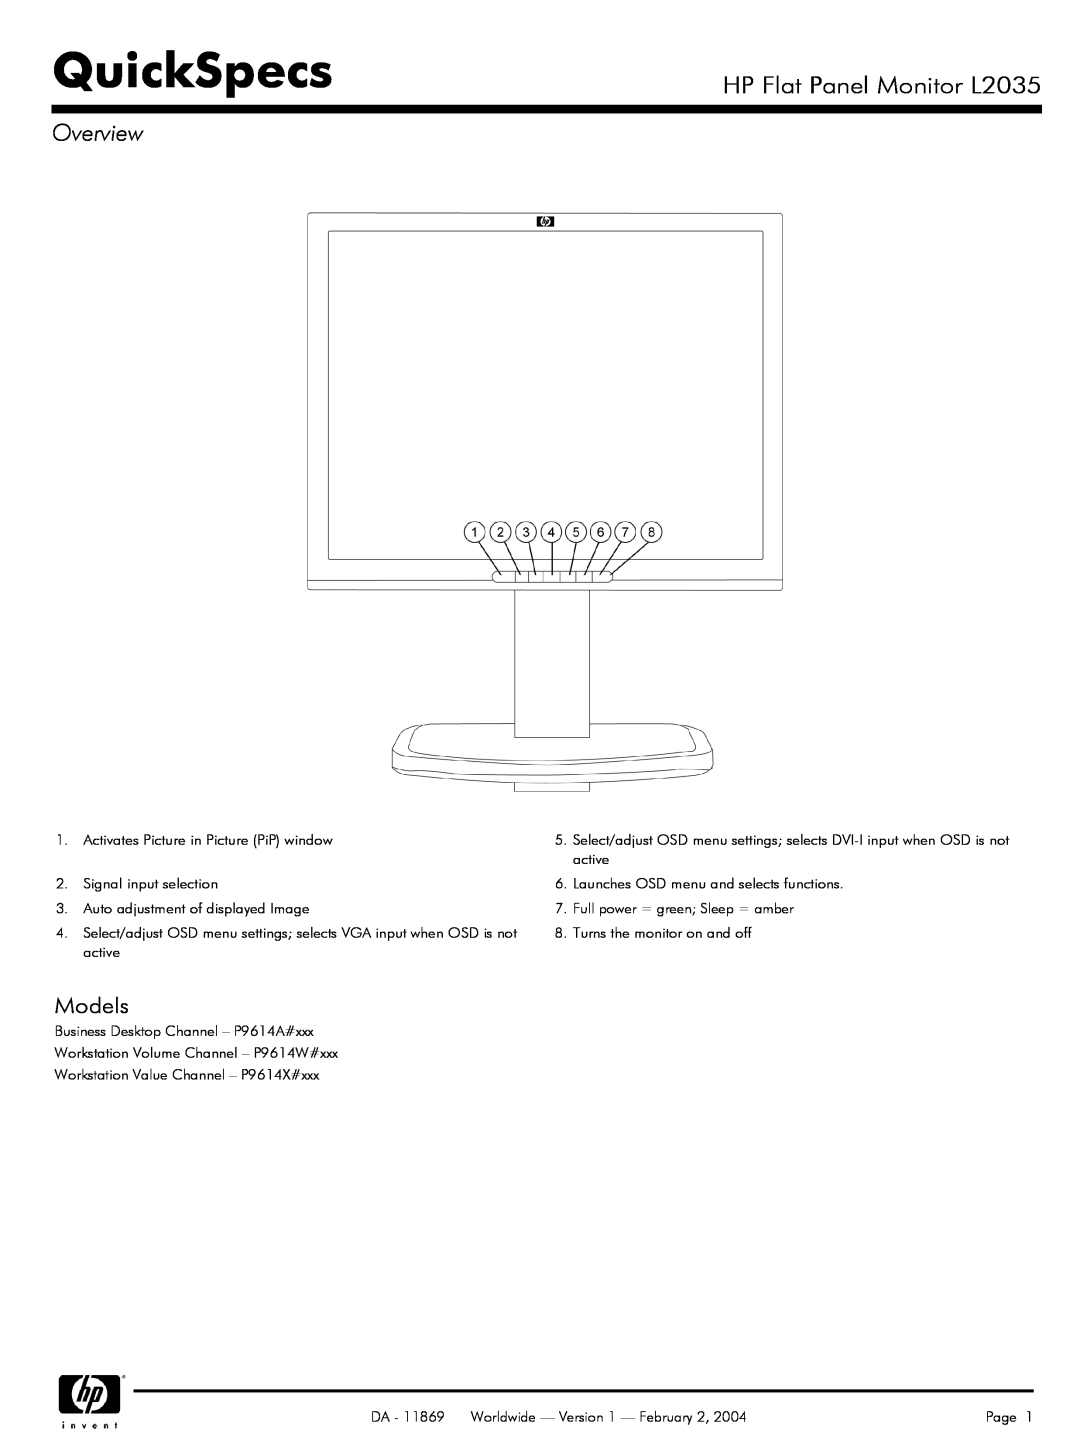 FHP manual QuickSpecs, HP Flat Panel Monitor L2035, Overview, Models 